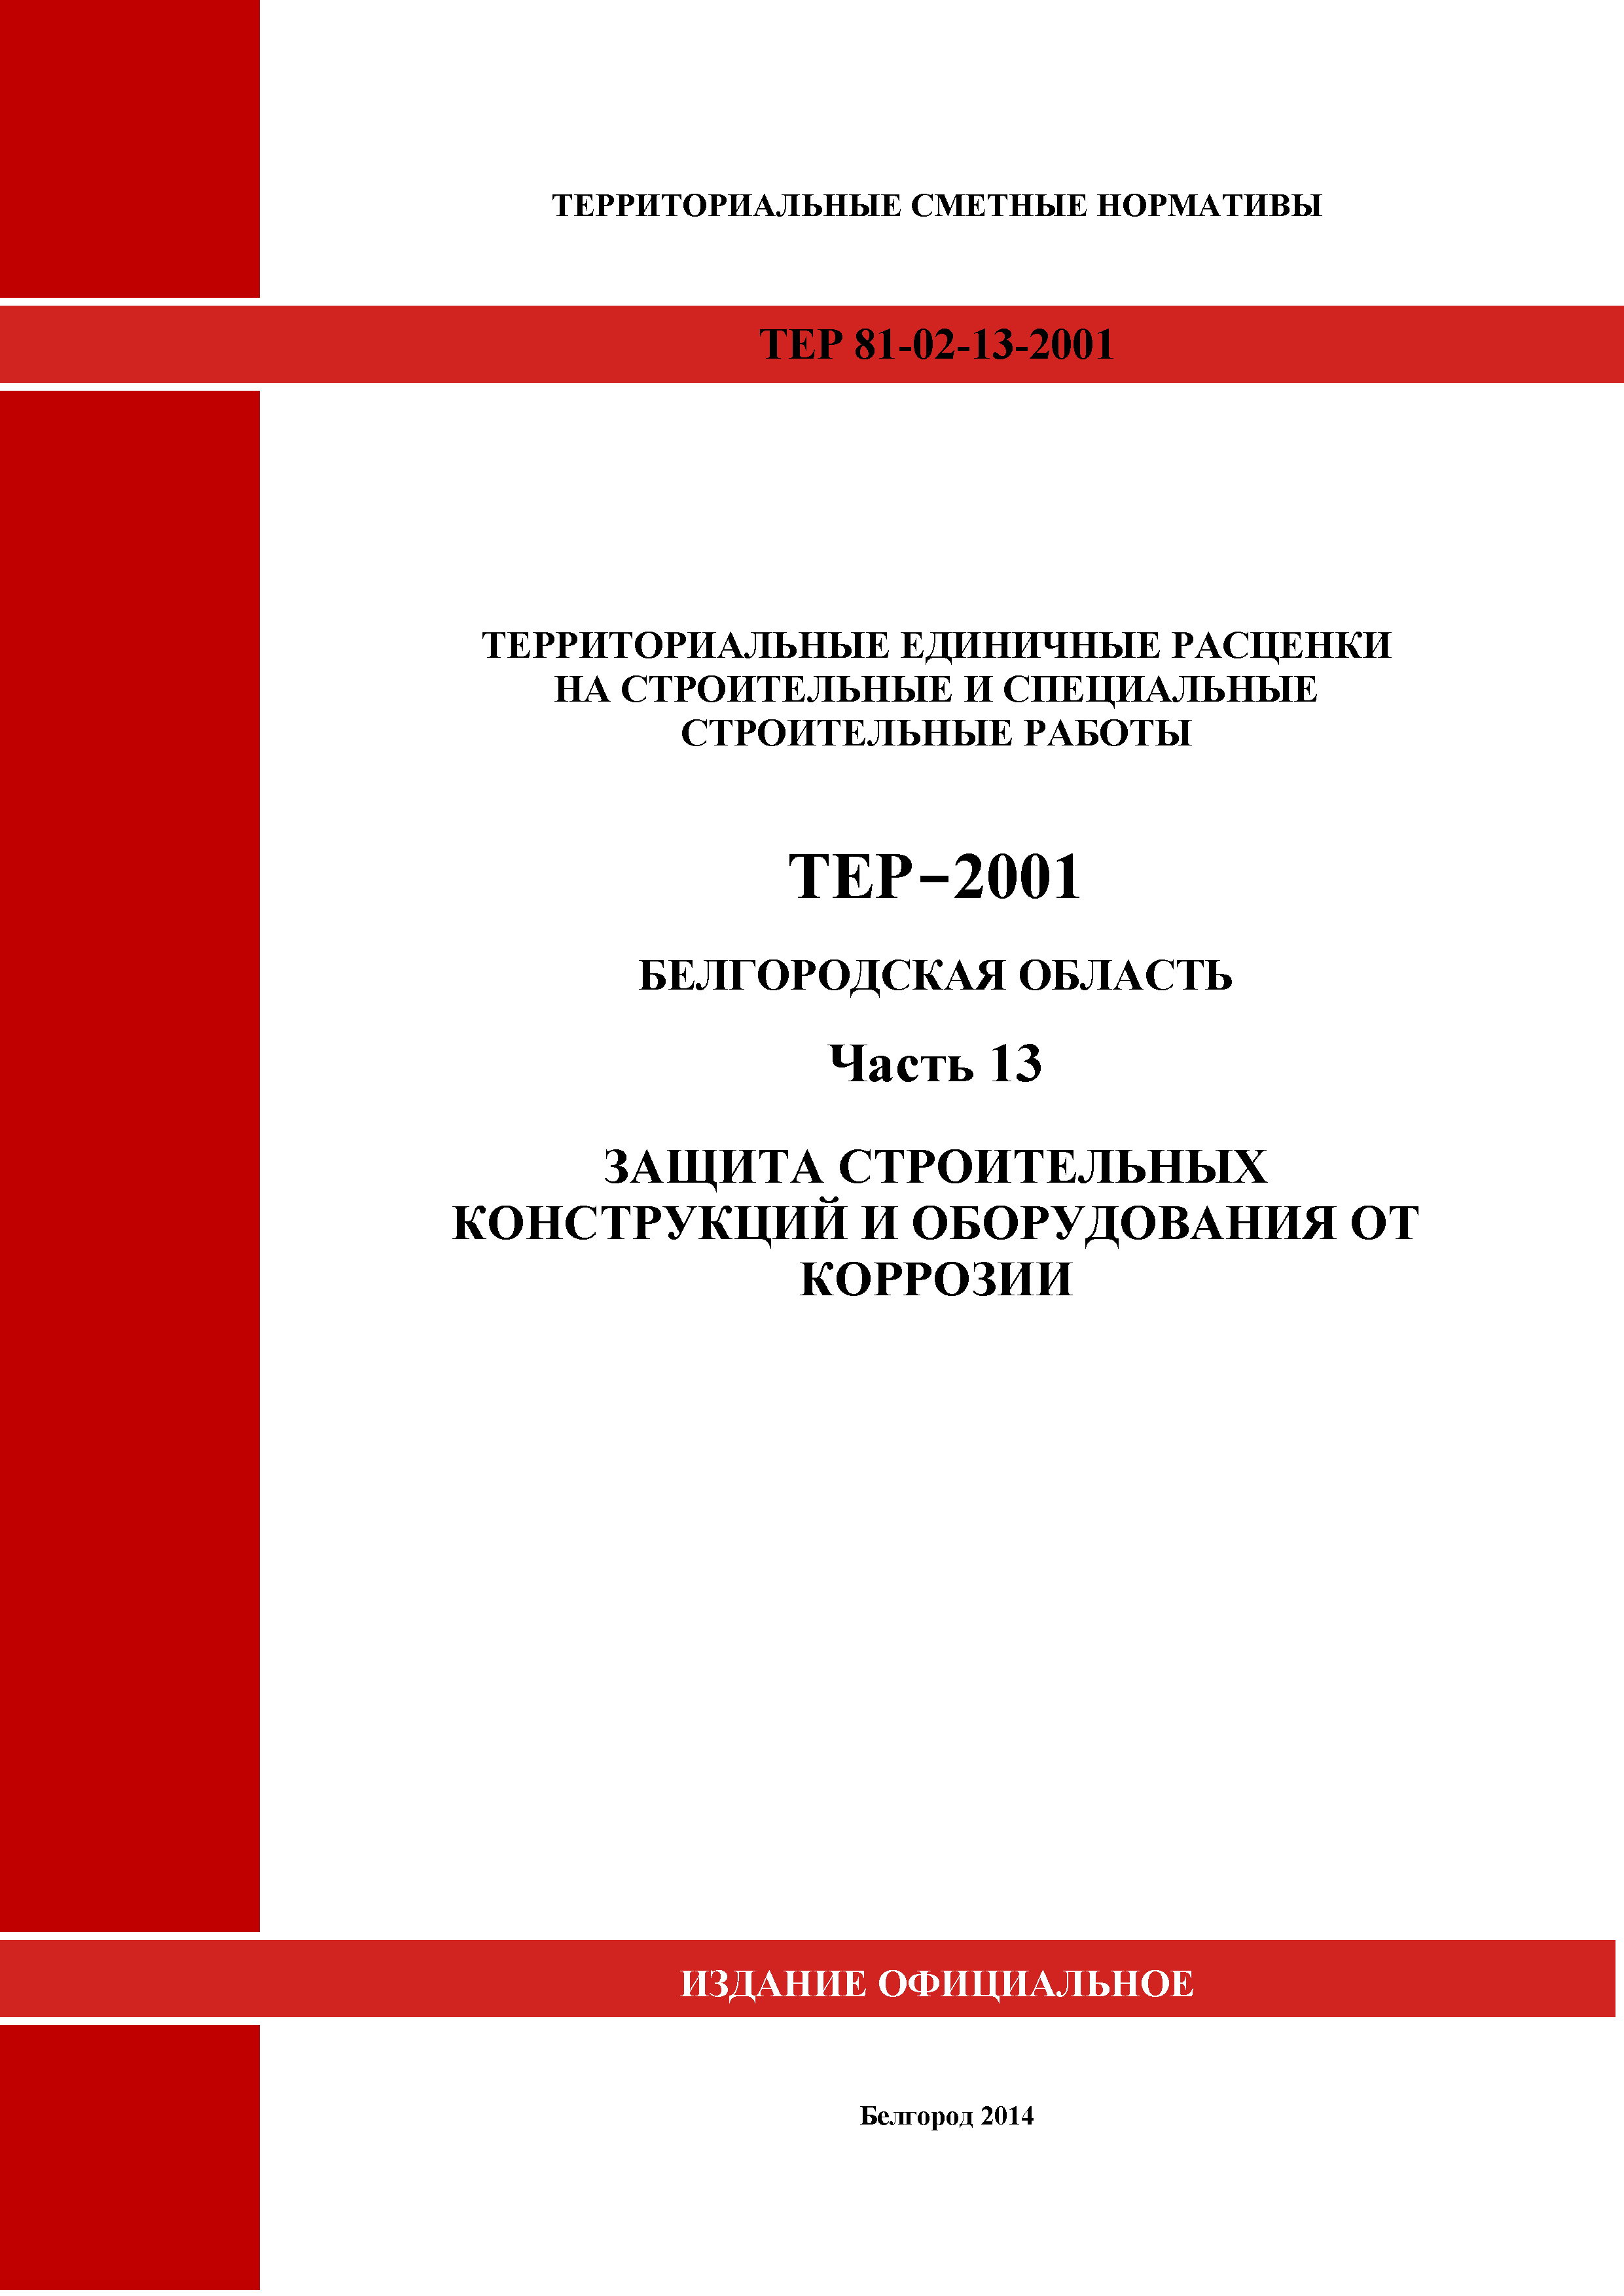 ТЕР Белгородская область 81-02-13-2001